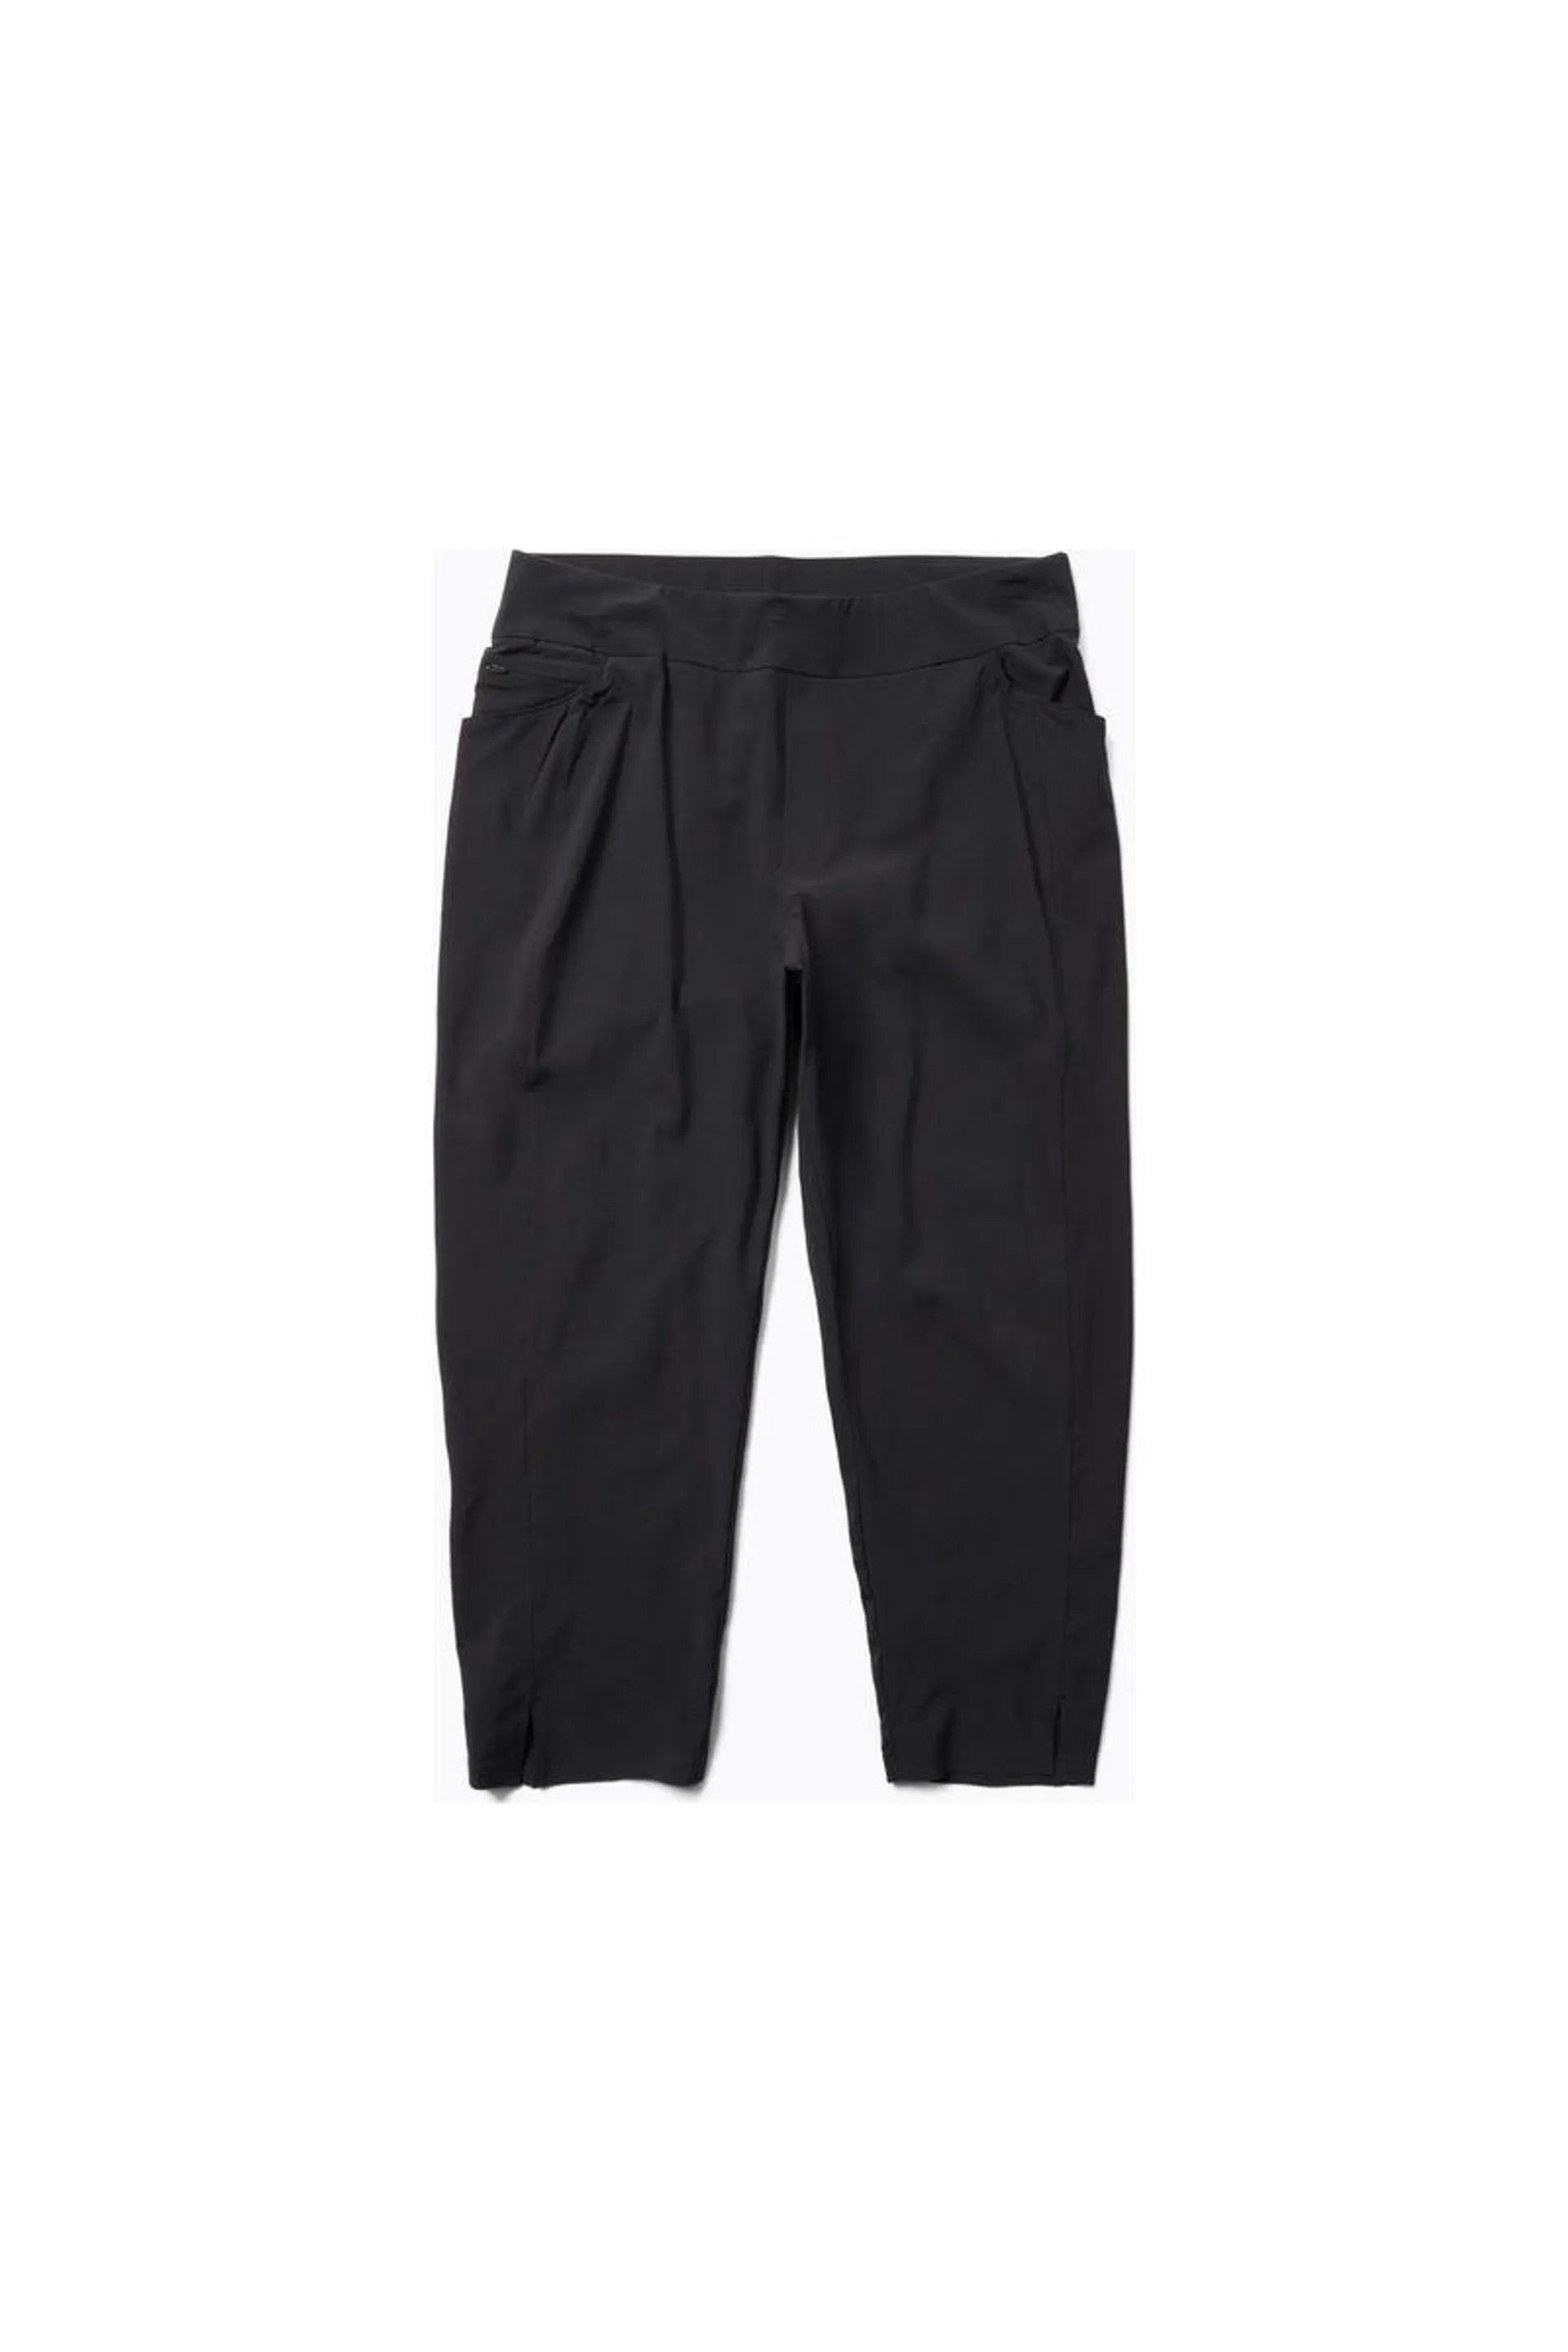 Pantalones Sierra - Black